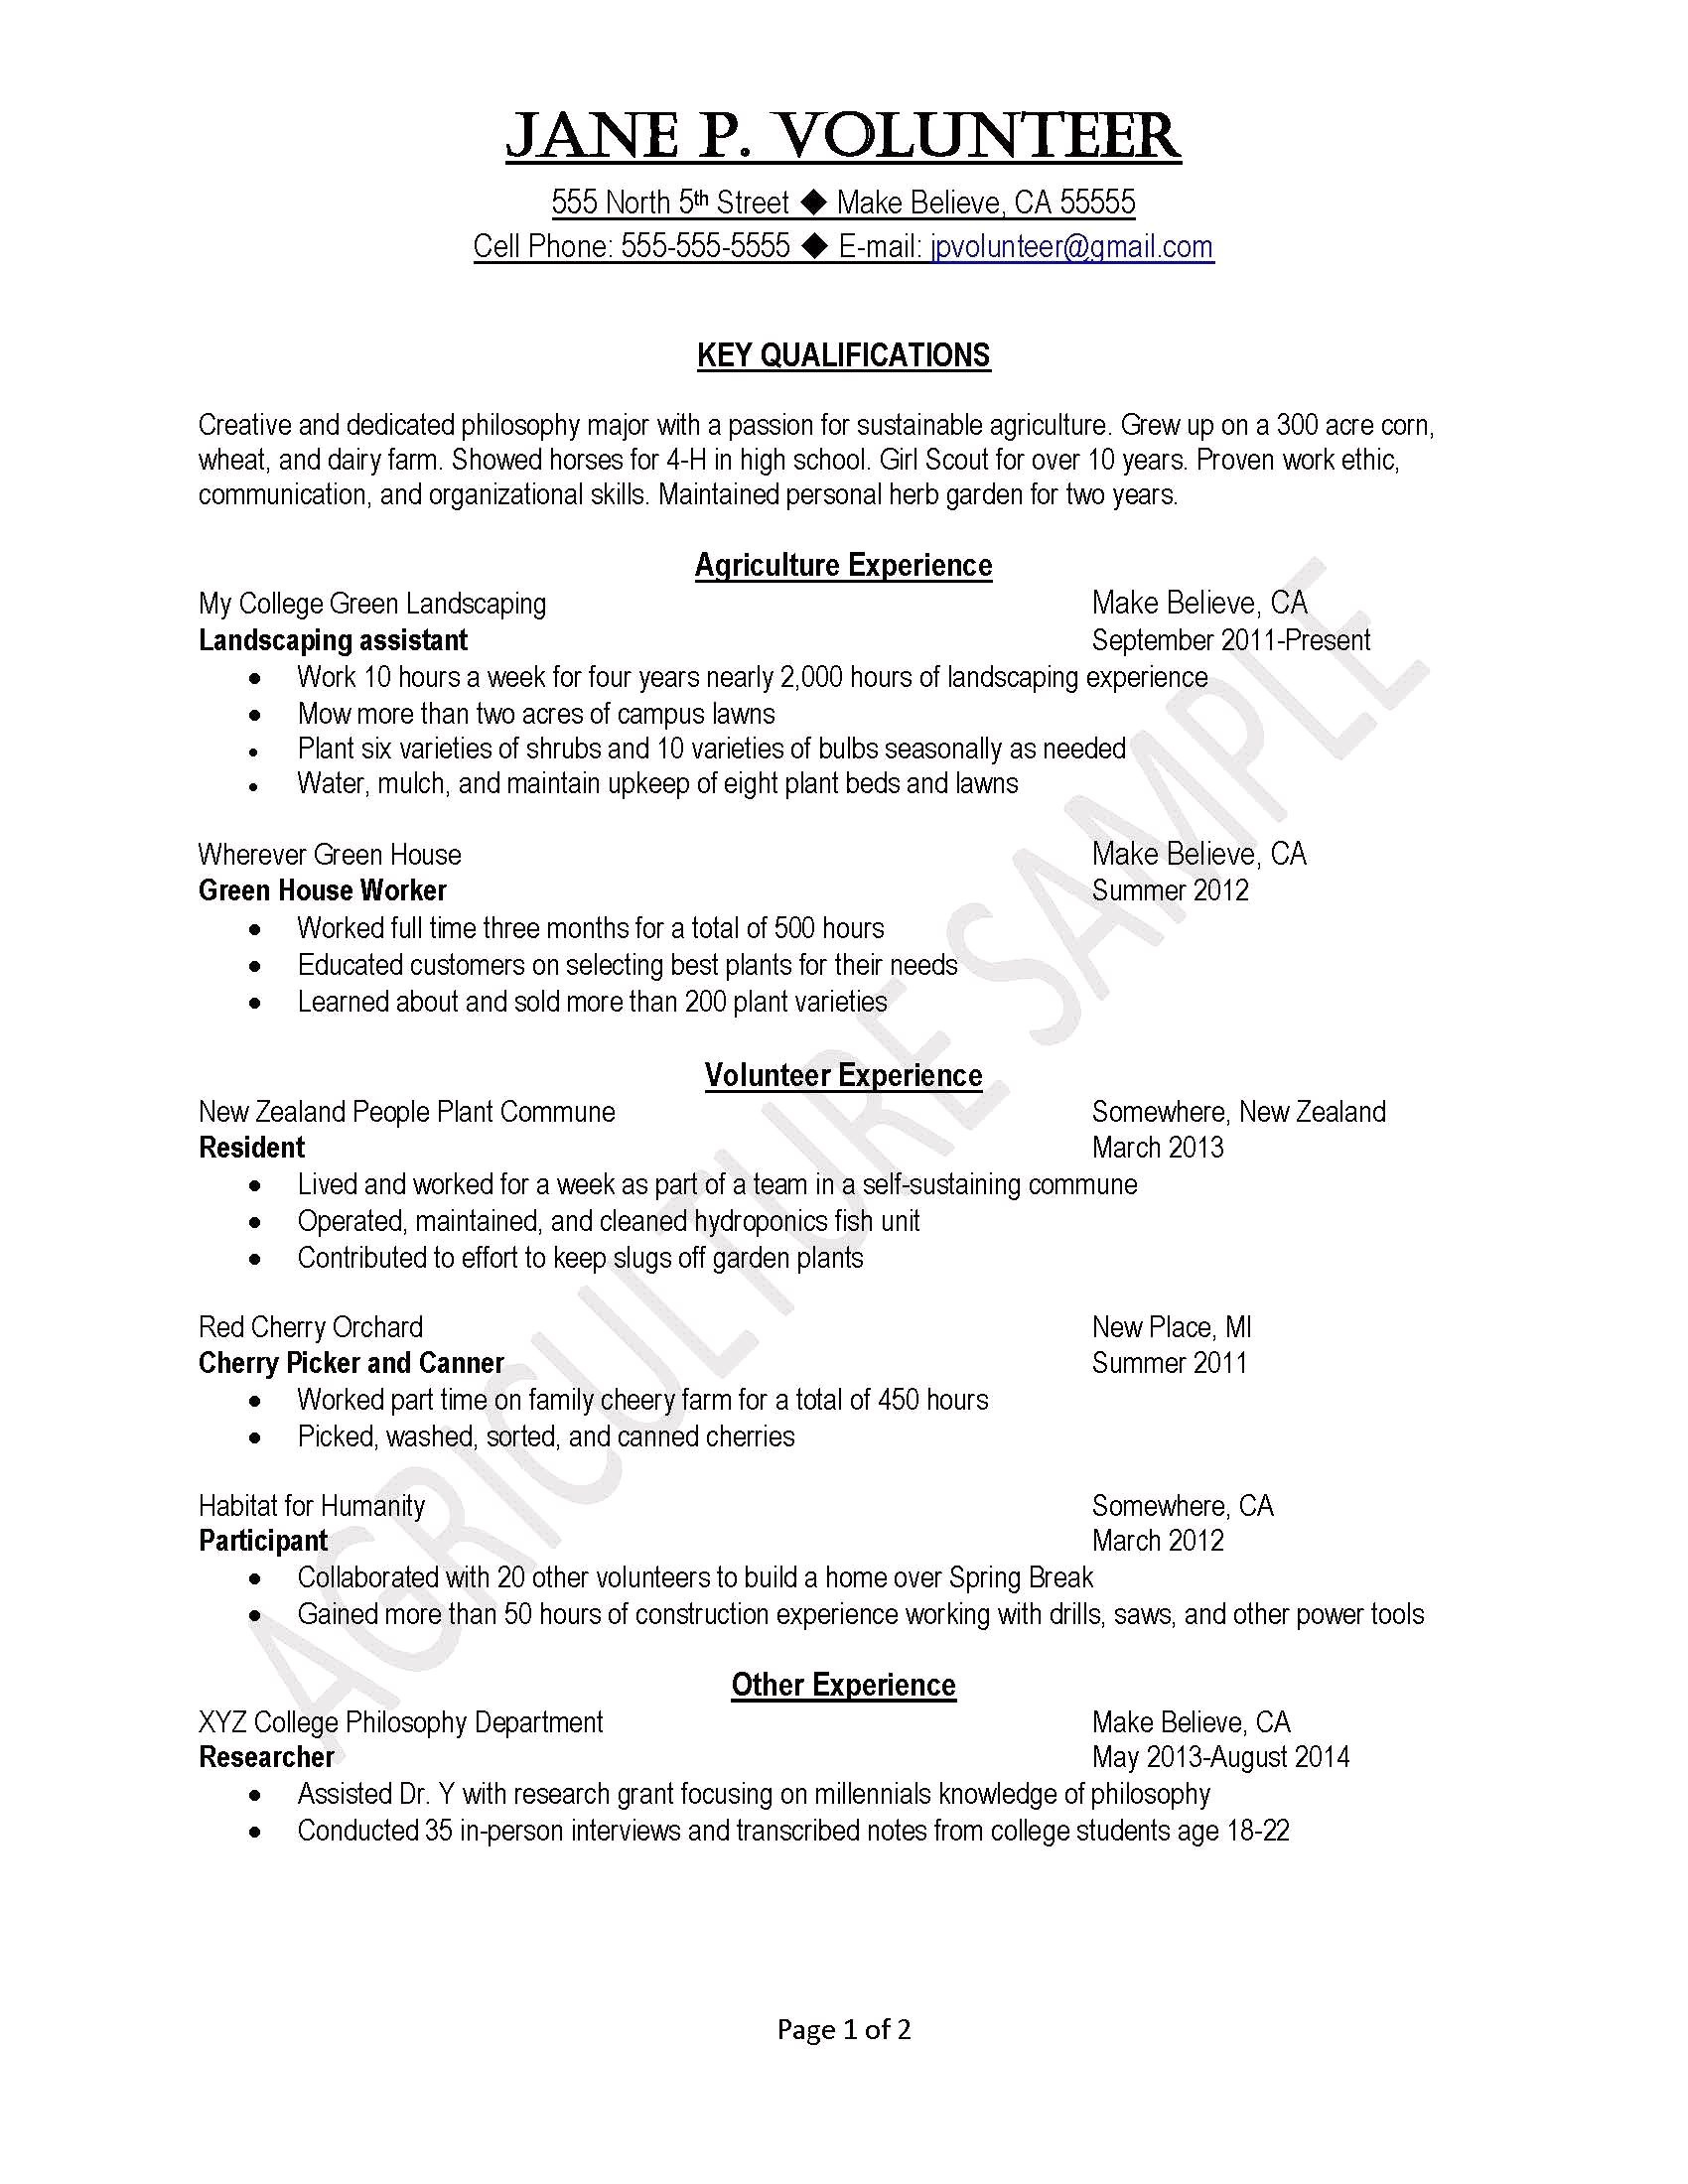 High School Resume Free High School Resume Template Unusual High School Resume Samples Good Resume Cover Letter Lovely Resume Photo high school resume|wikiresume.com